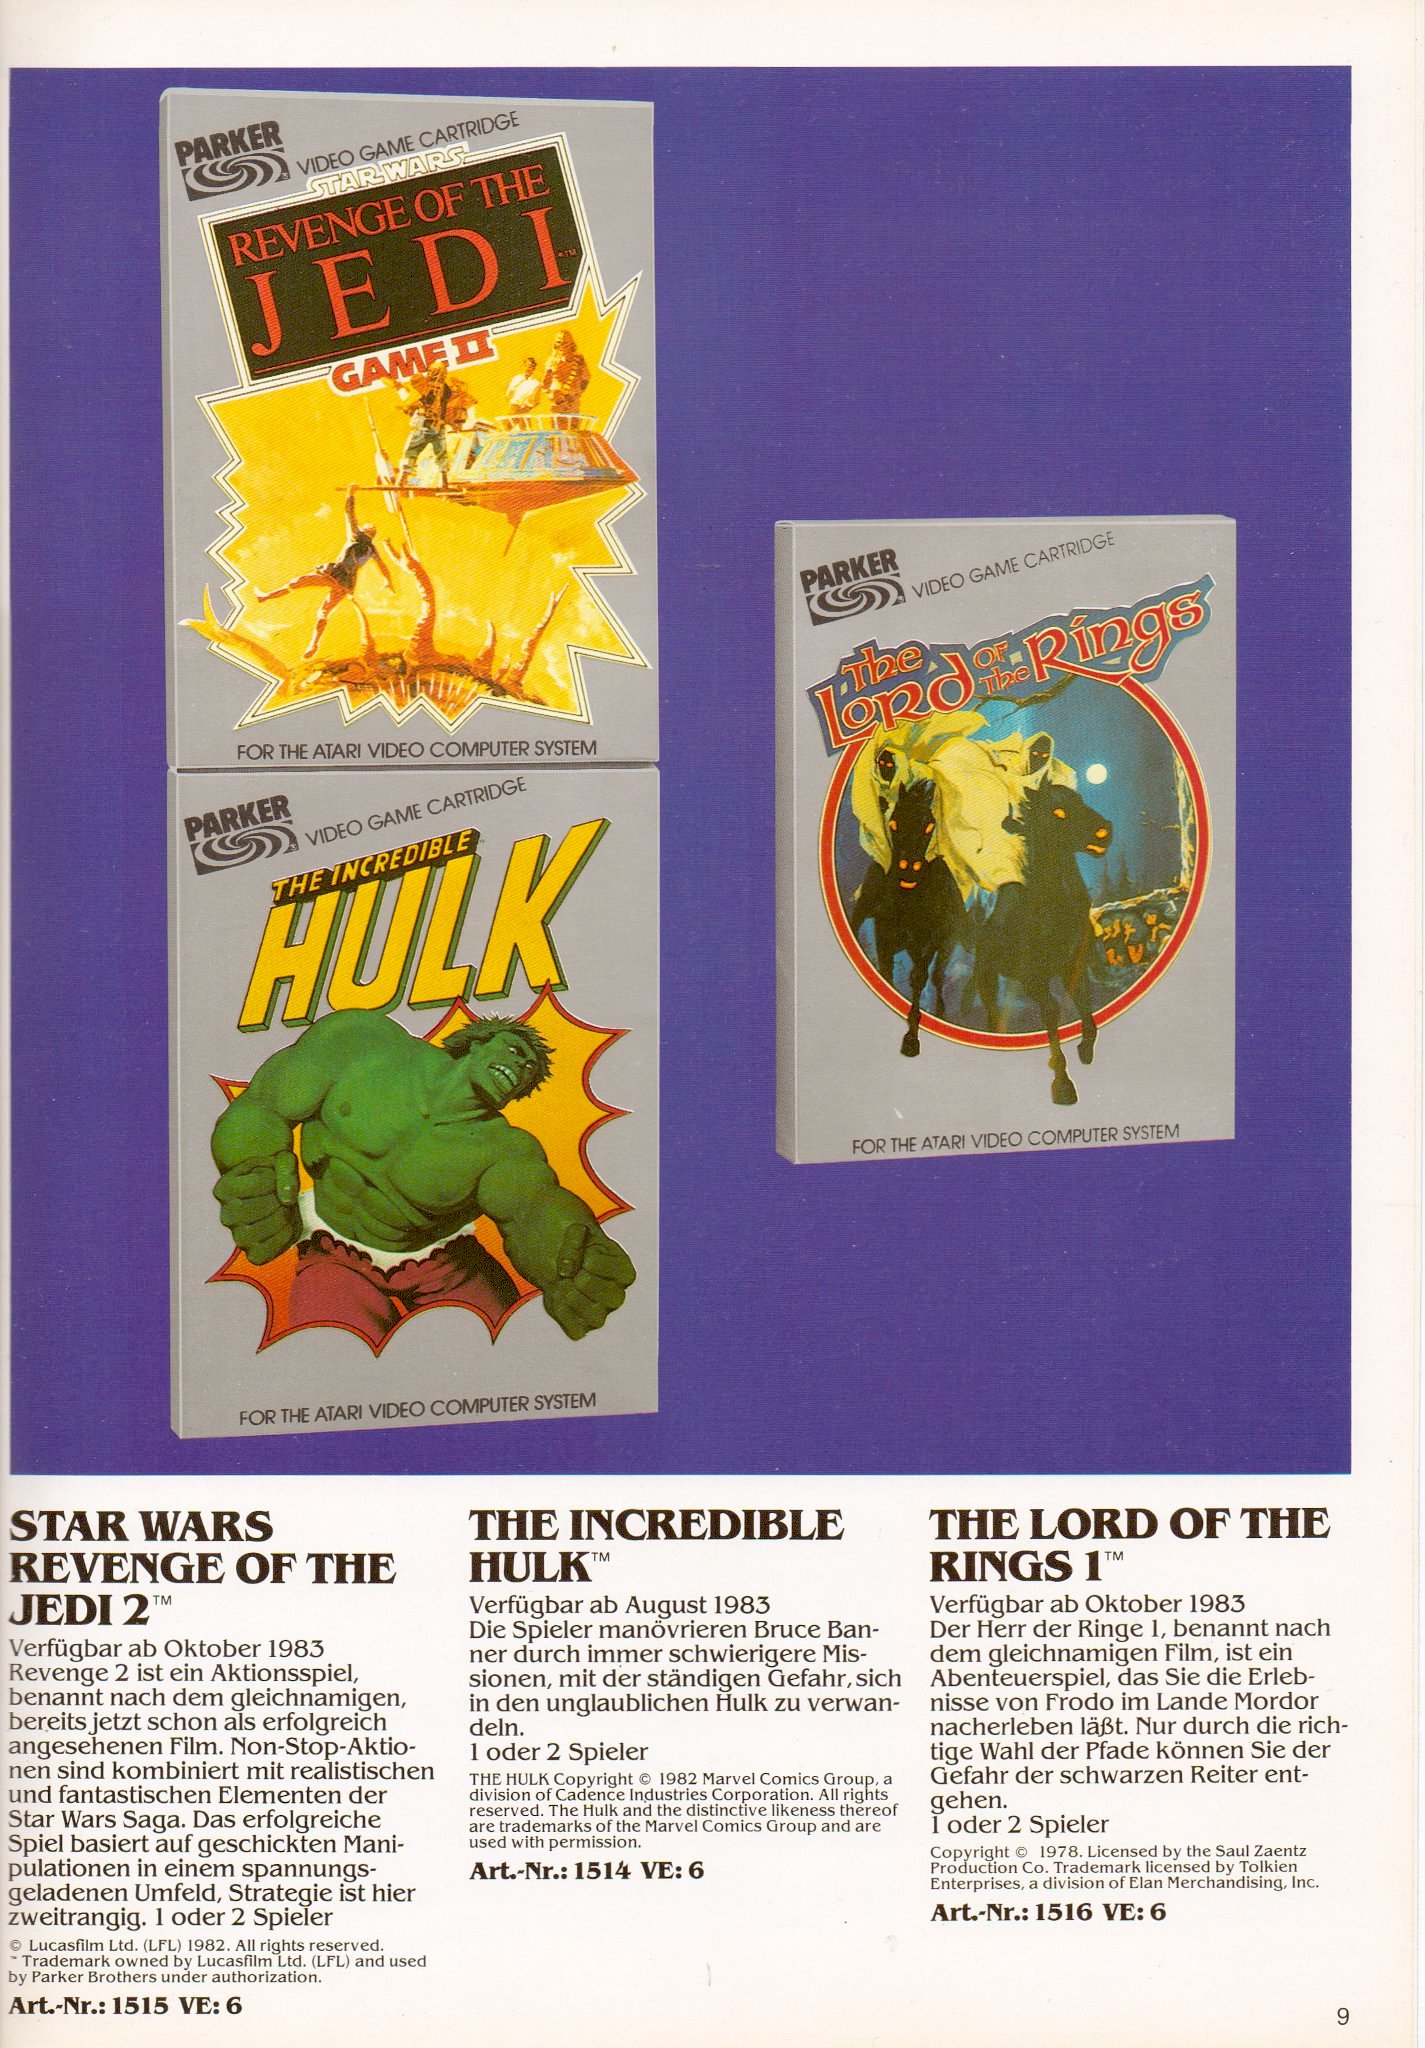 Abbildung aus dem Parker Prospekt mit Bezug auf das Spiel Hulk